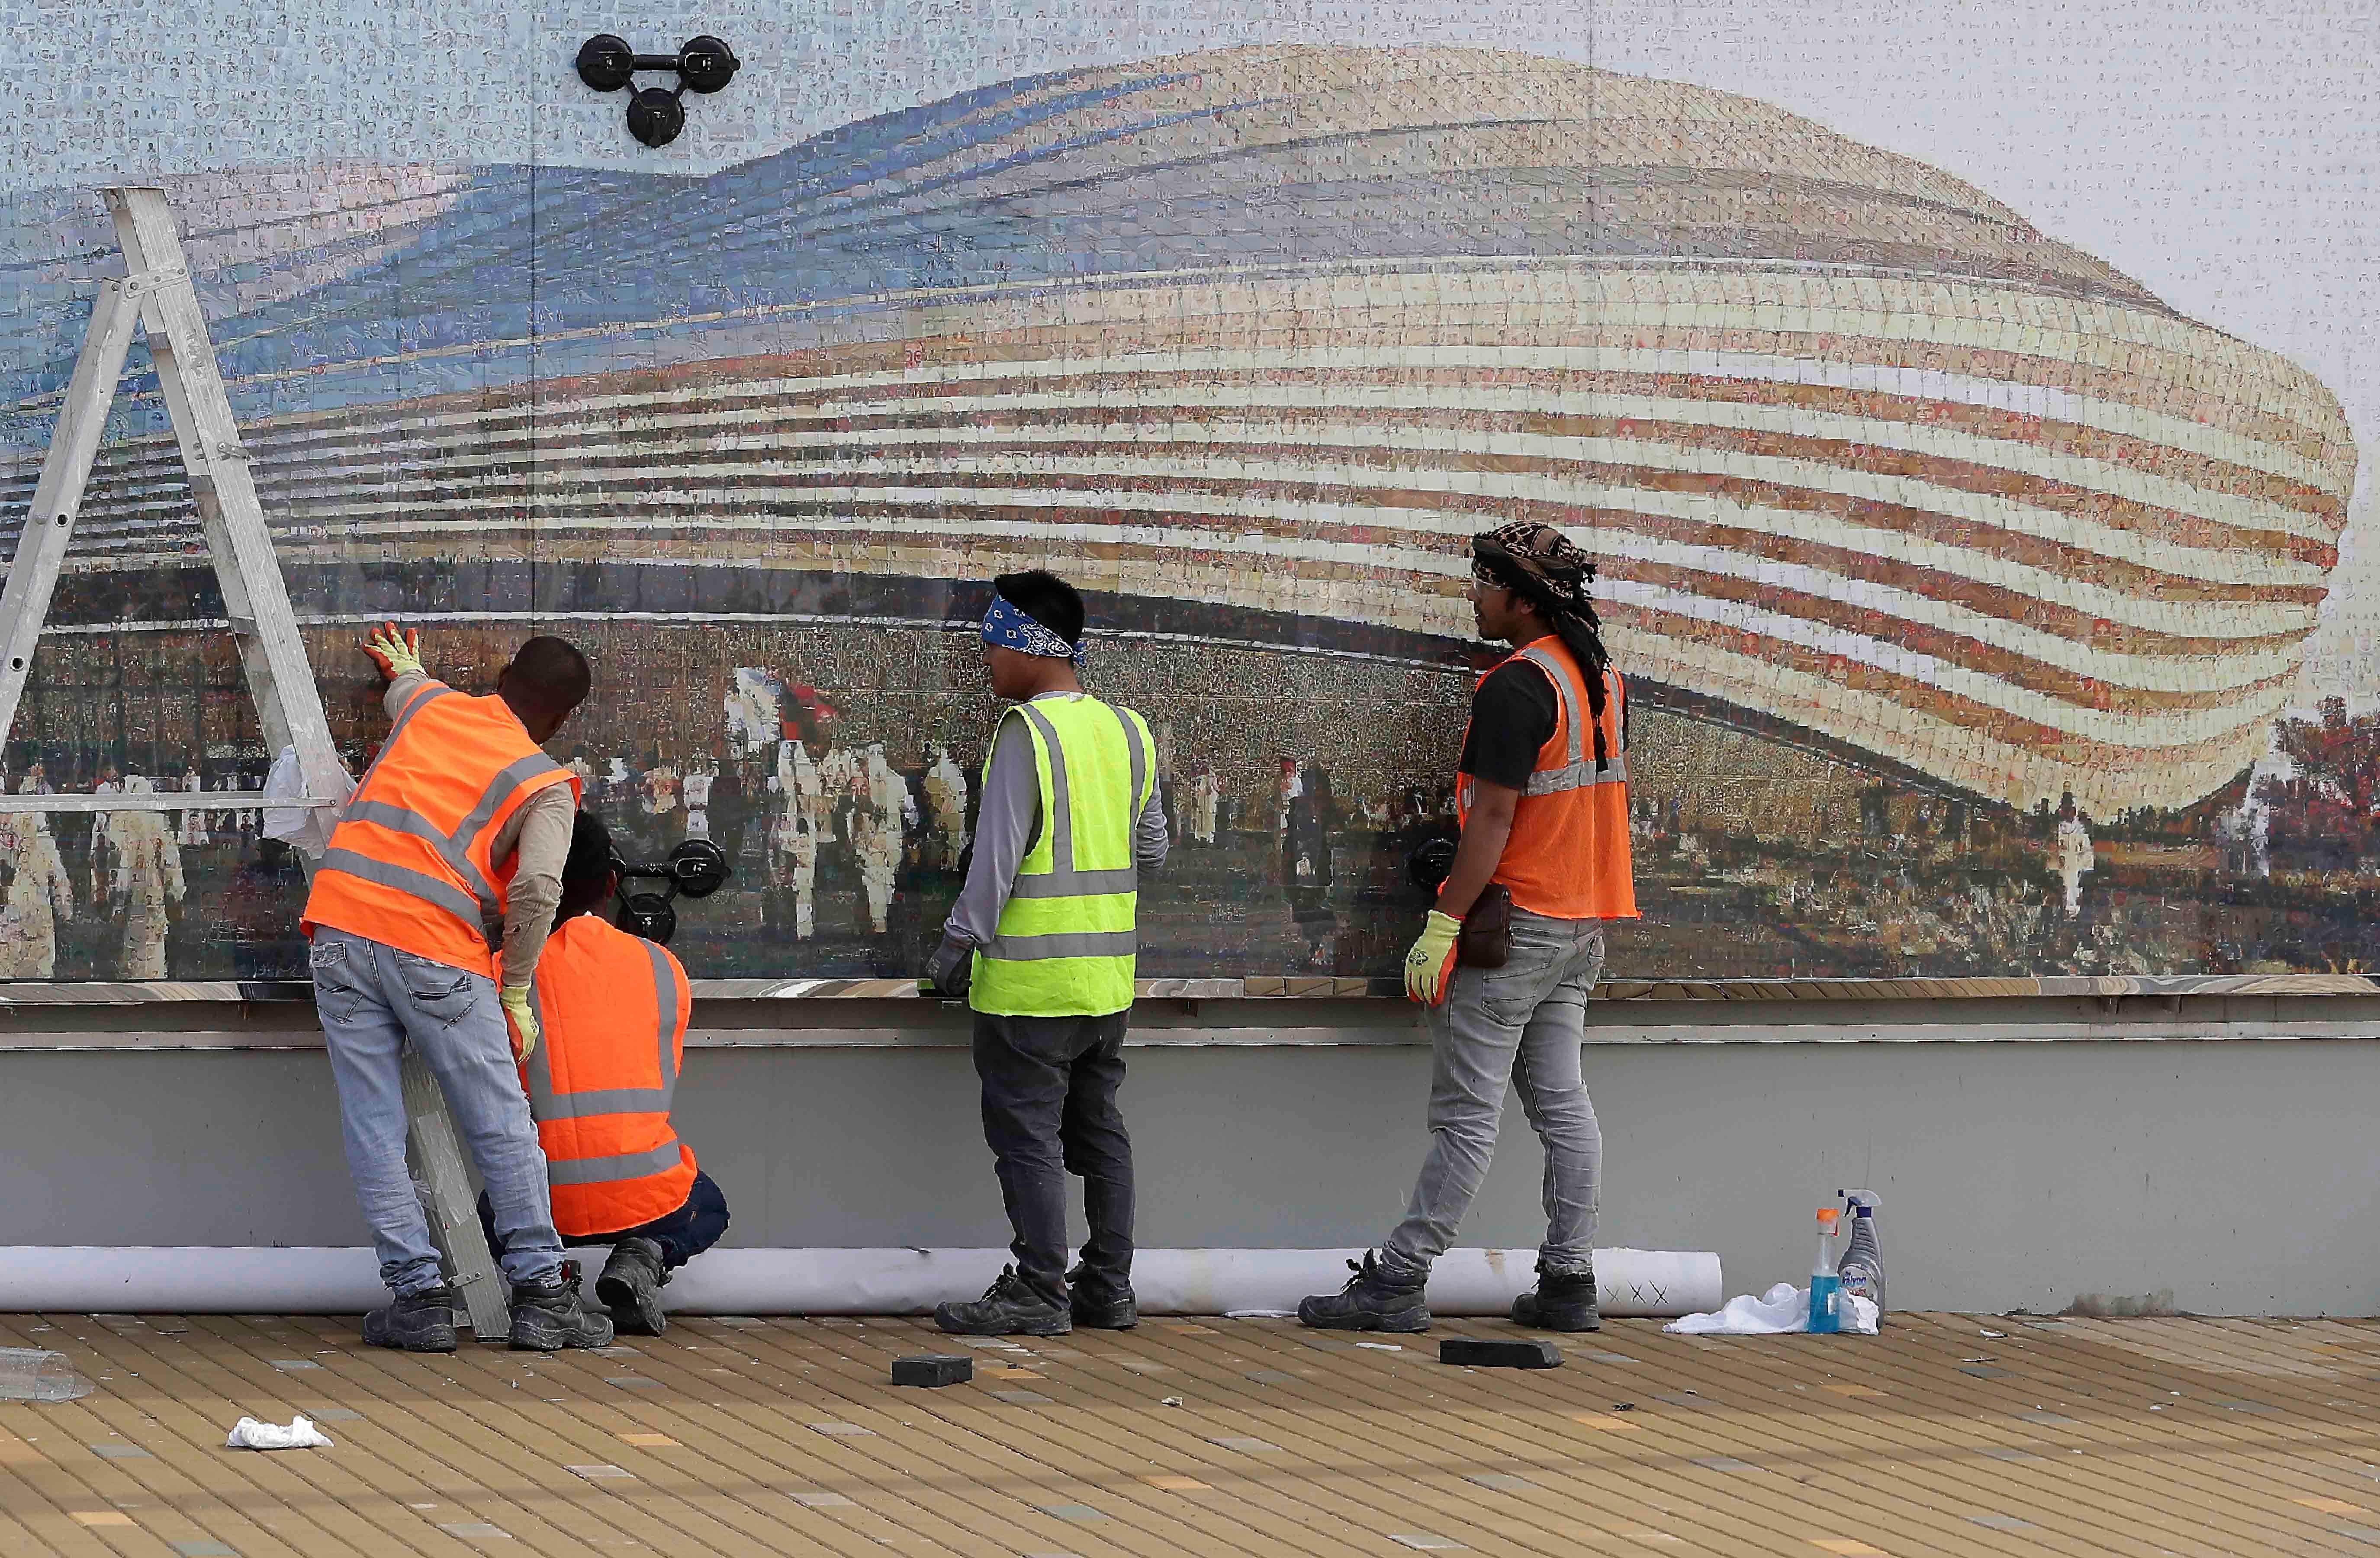 Des ouvriers devant un panneau montrant le stade Al-Janoub, l'un de ceux où se déroulera la Coupe du monde 2022, à Doha, au Qatar, le lundi 16 décembre 2019.